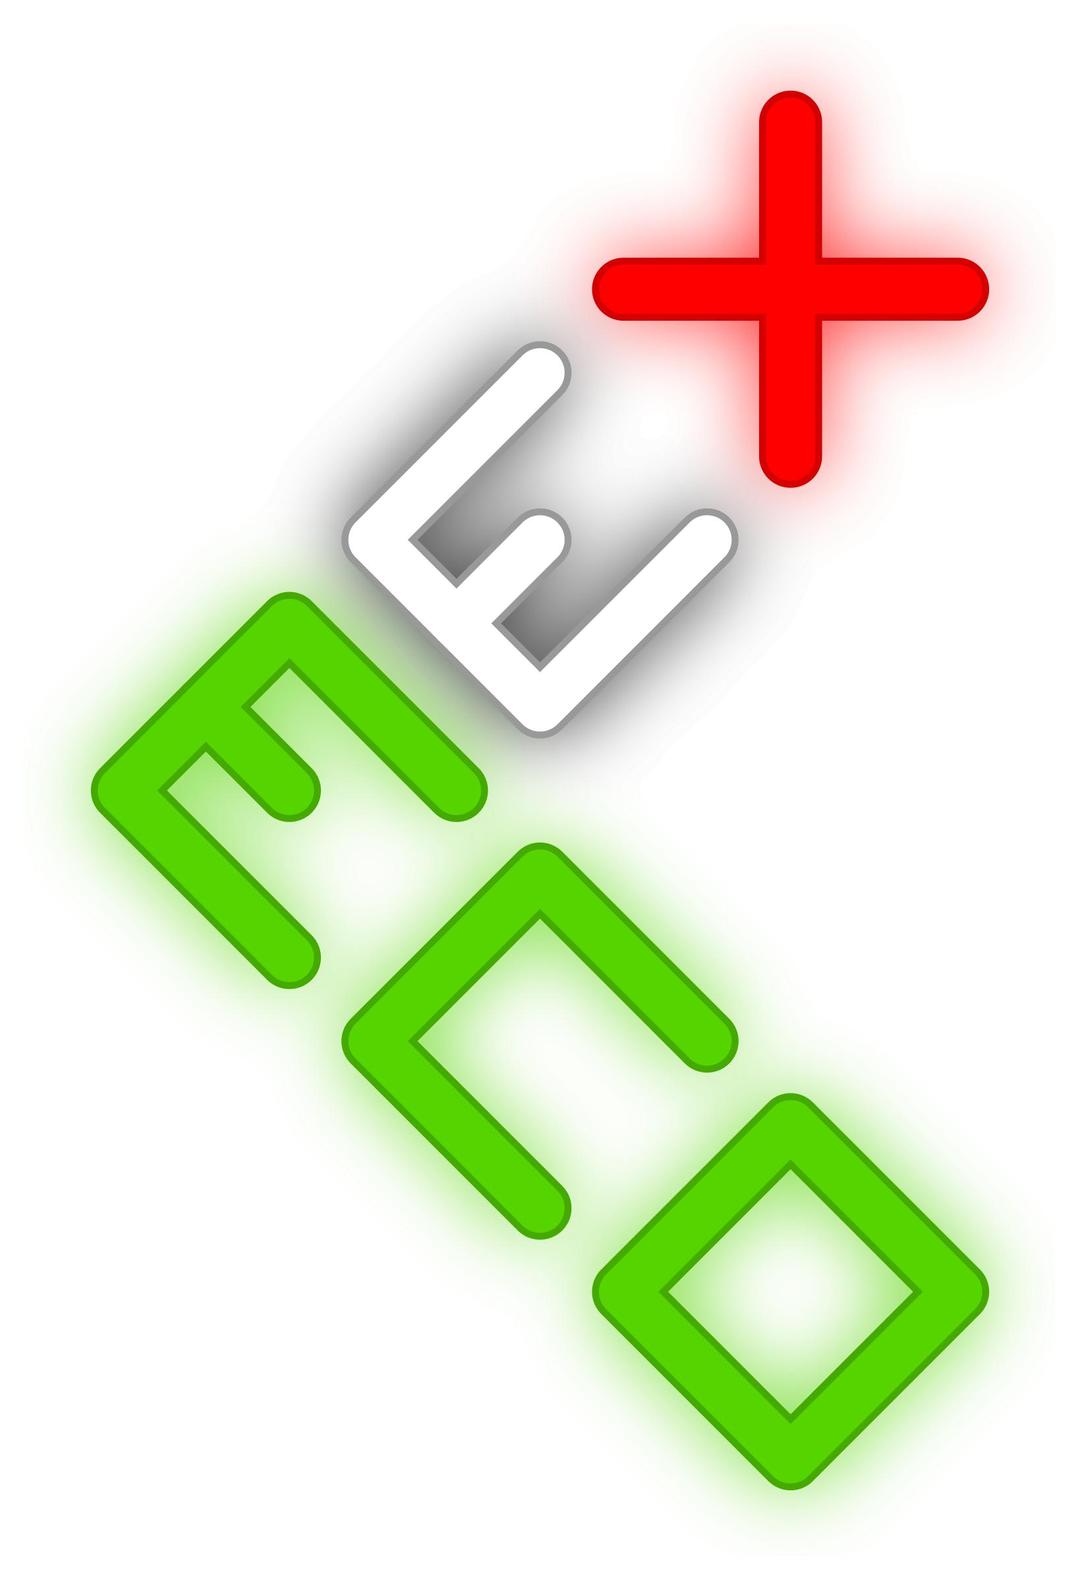 EcoMex2 logo / Logotipo EcoMex2 png transparent